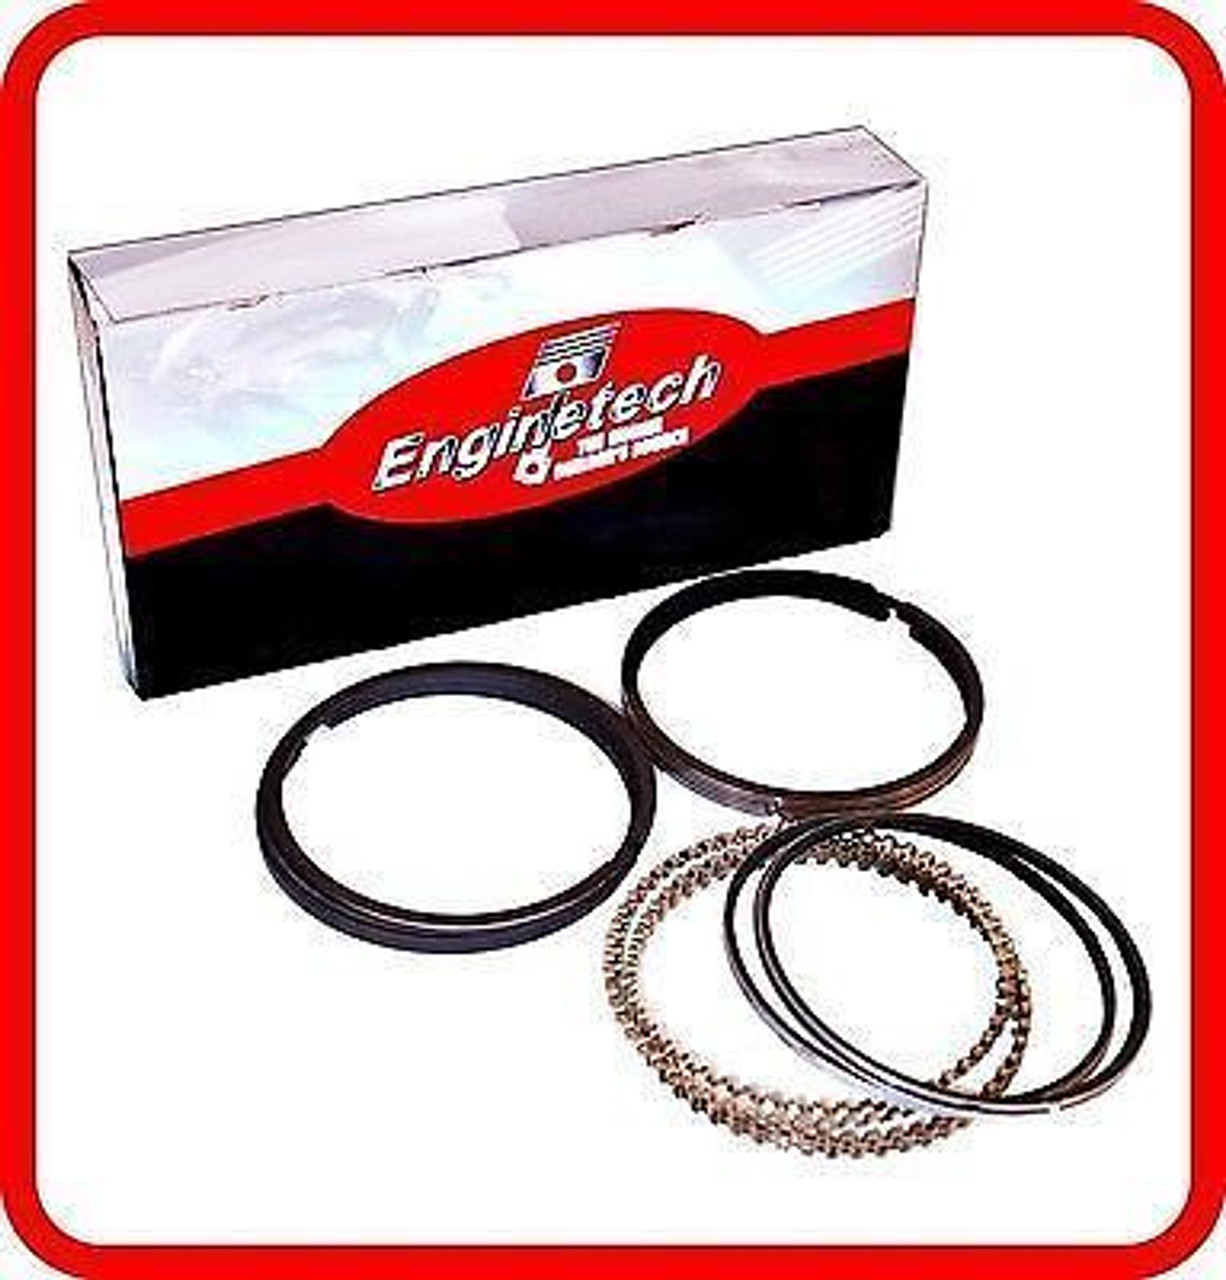 Engine Piston Ring Set - Kit Part - R89354